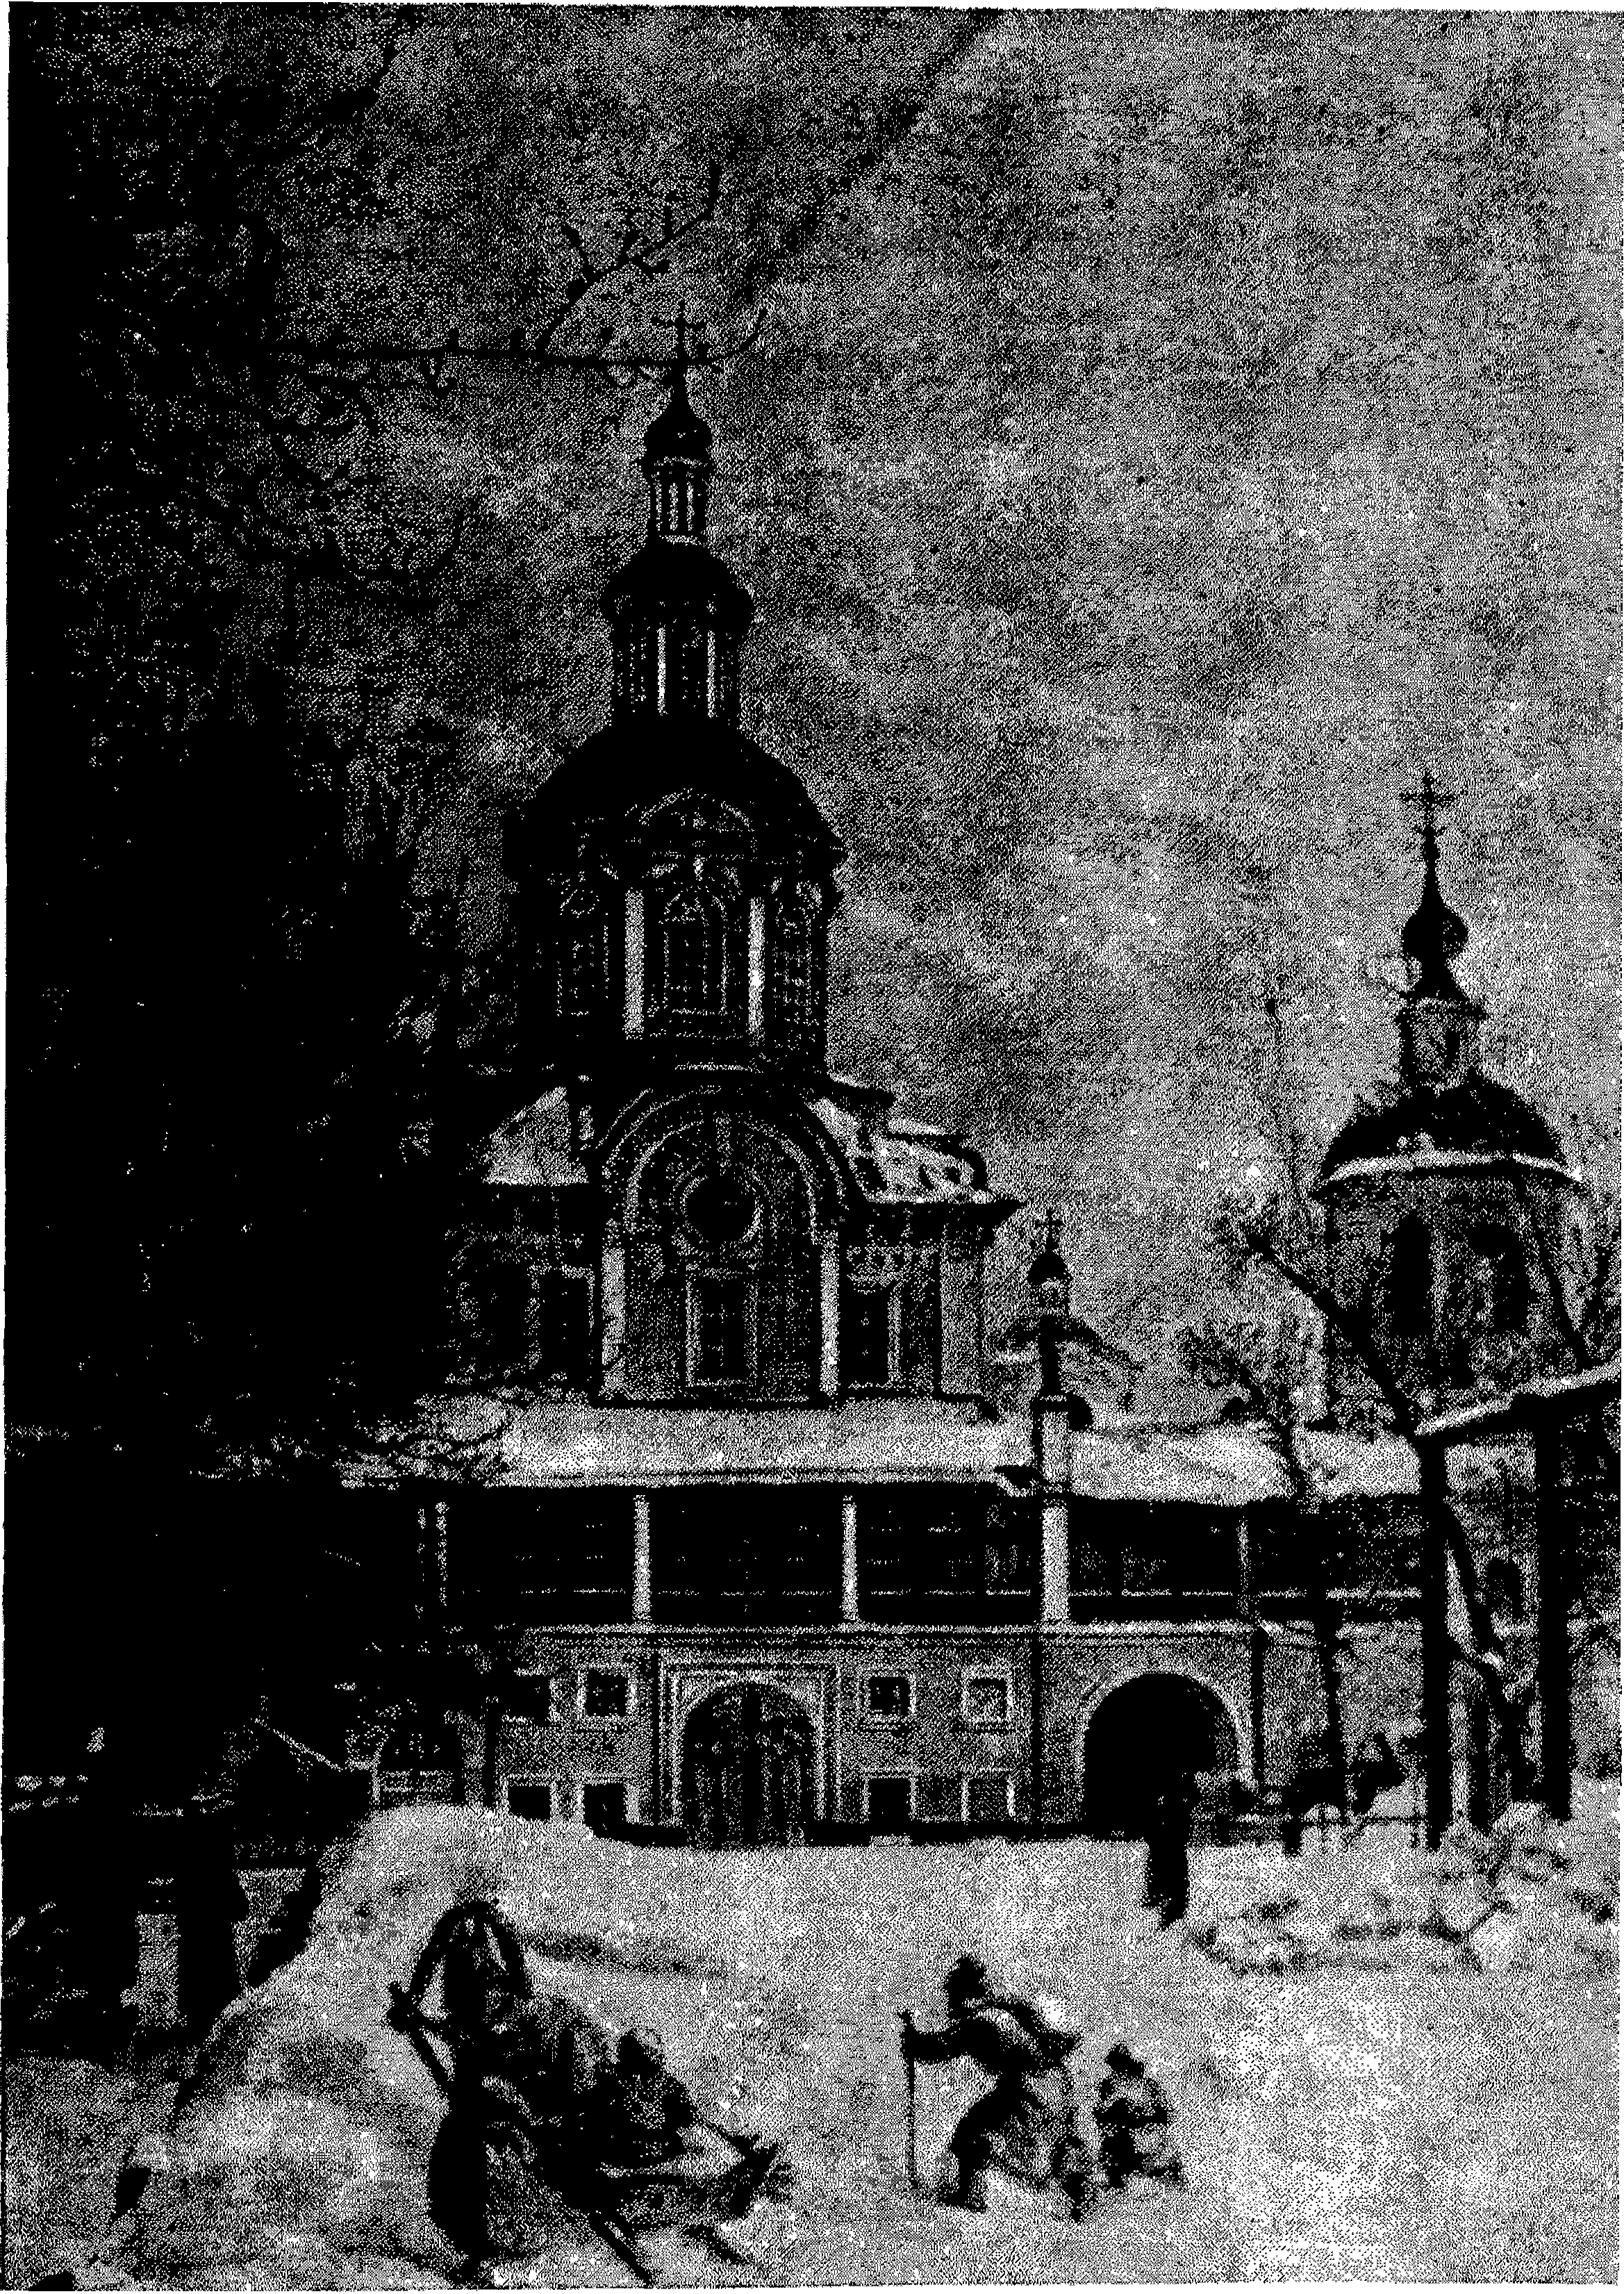 Рис. 3. Заиконоспасский монастырь, в котором находилась Славяно-греко-латинская академия. Гравюра Шлиппера (журнал «Нива», 1893, № 8)